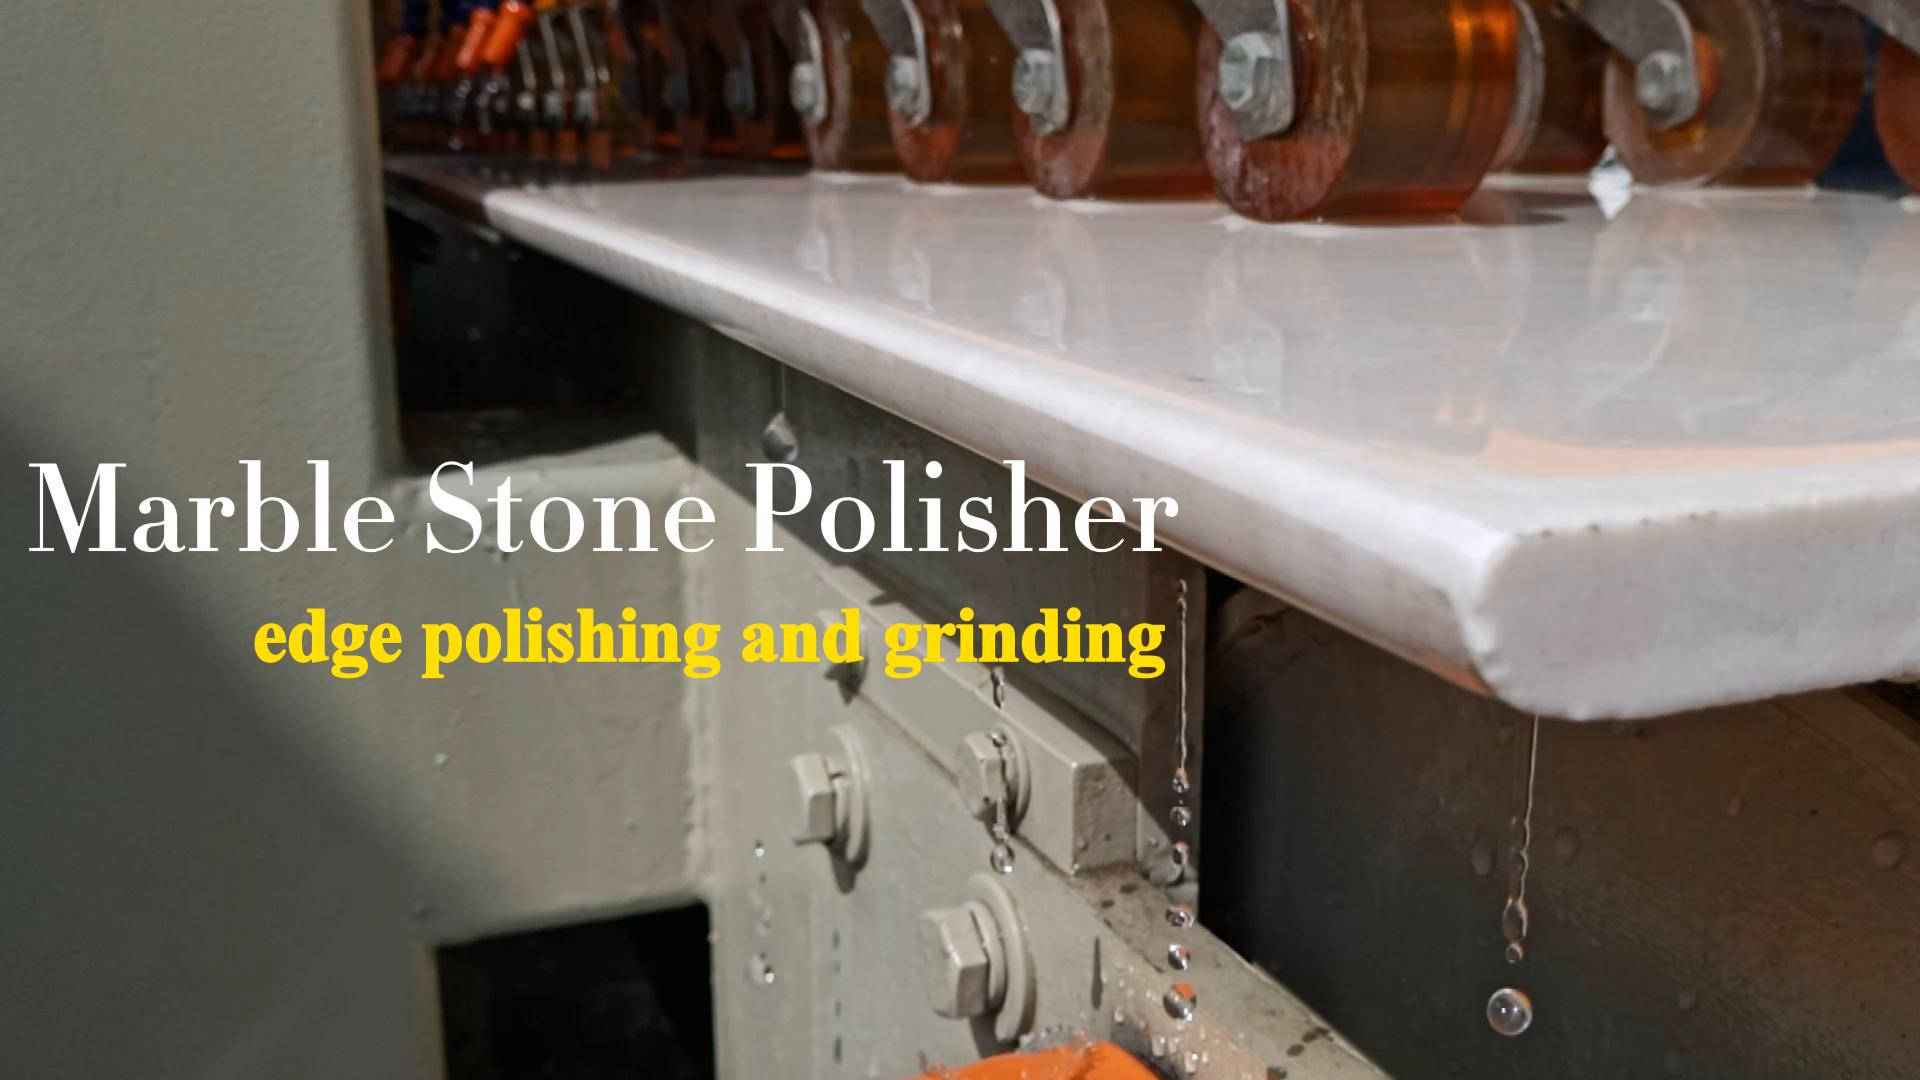 Marble stone polisher